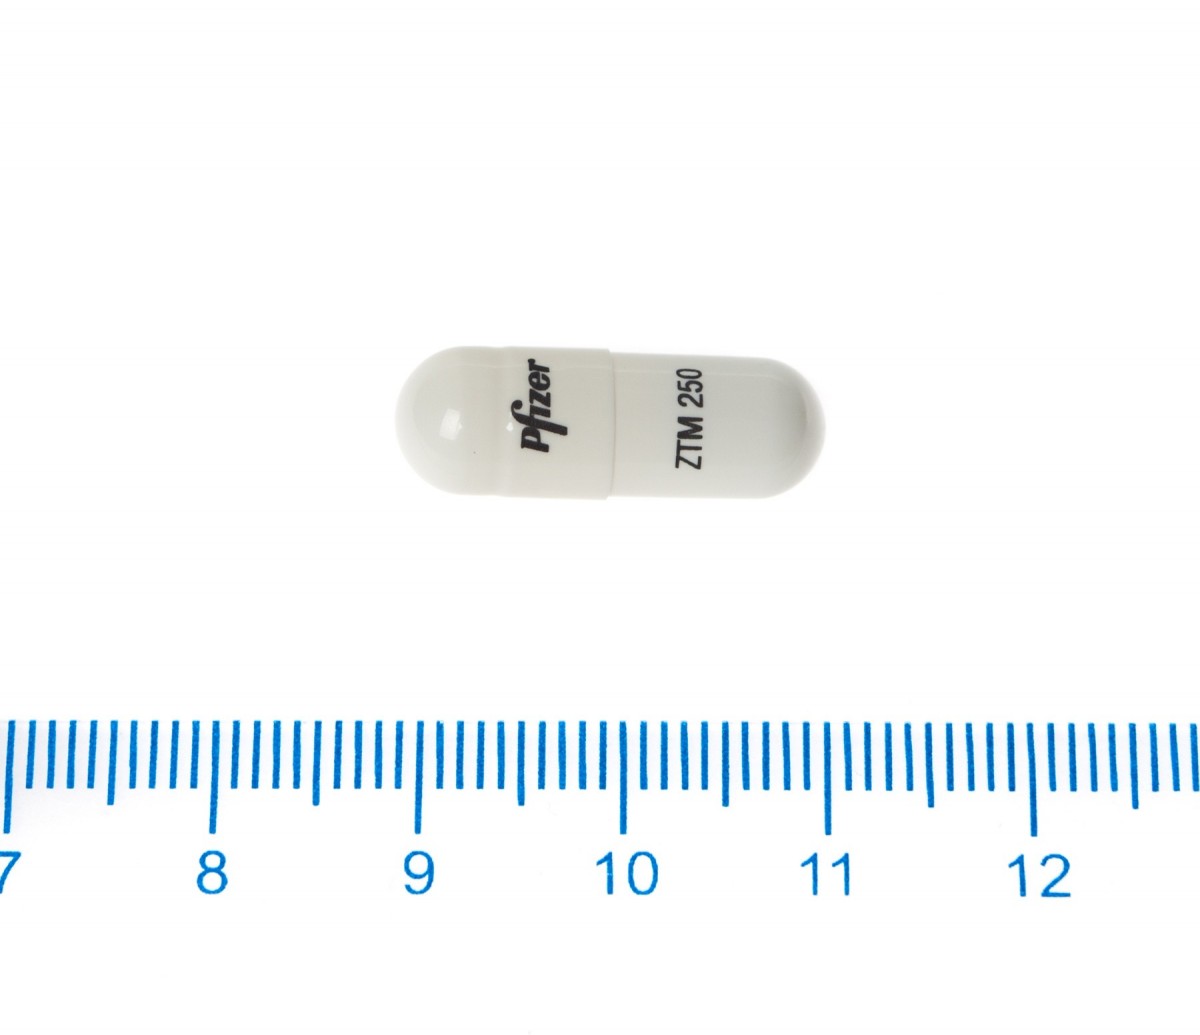 ZITROMAX 250 mg CAPSULAS DURAS, 6 cápsulas fotografía de la forma farmacéutica.